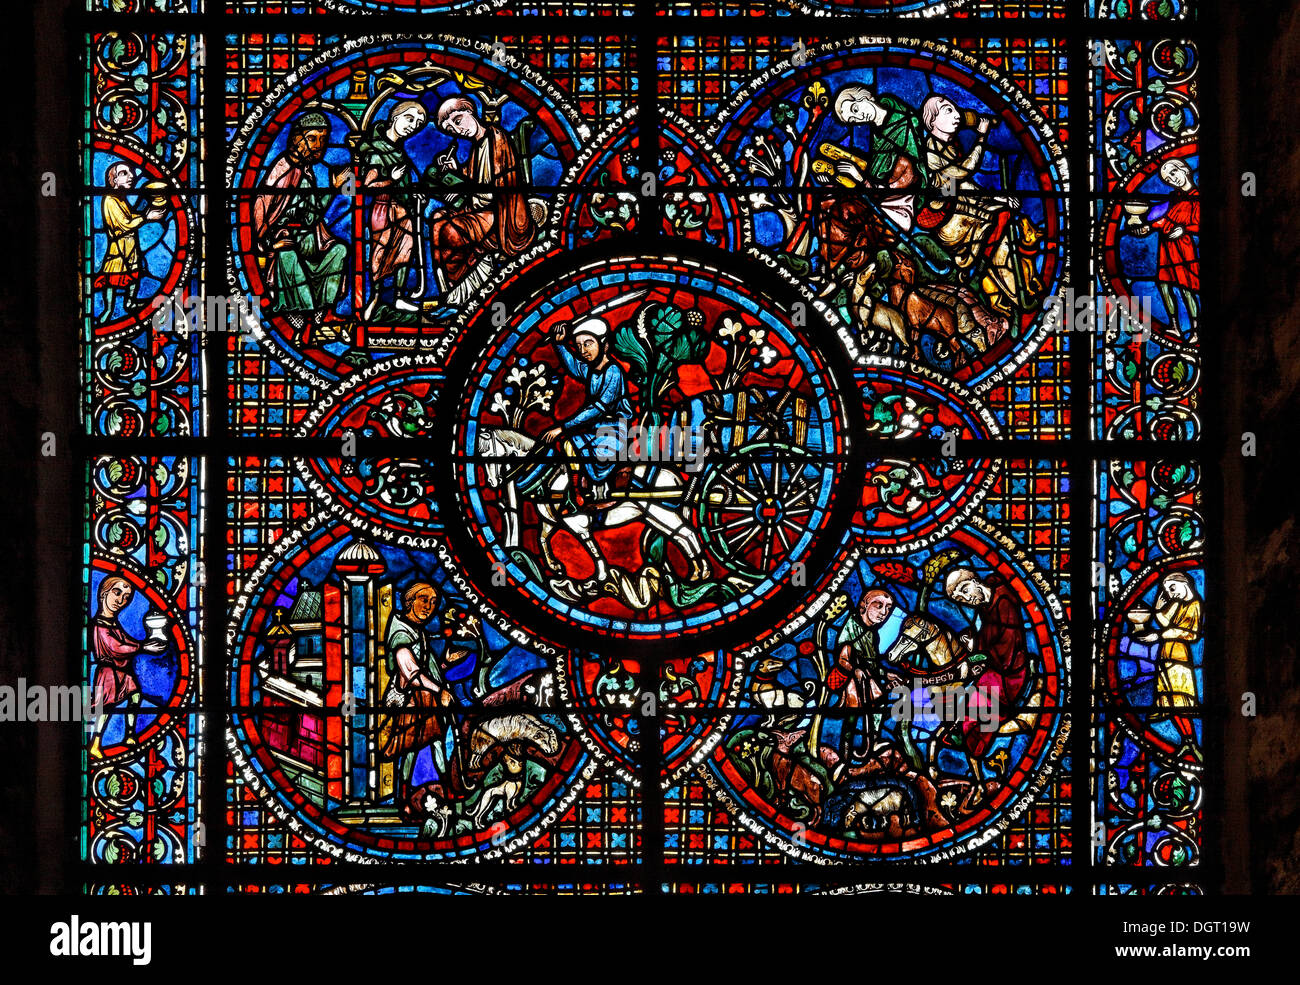 La cathédrale de Chartres, au nord de fenêtre dans la nef, le chariot avec des tonneaux de vin, région Ile de France, département de l'Eure-et-Loir Banque D'Images